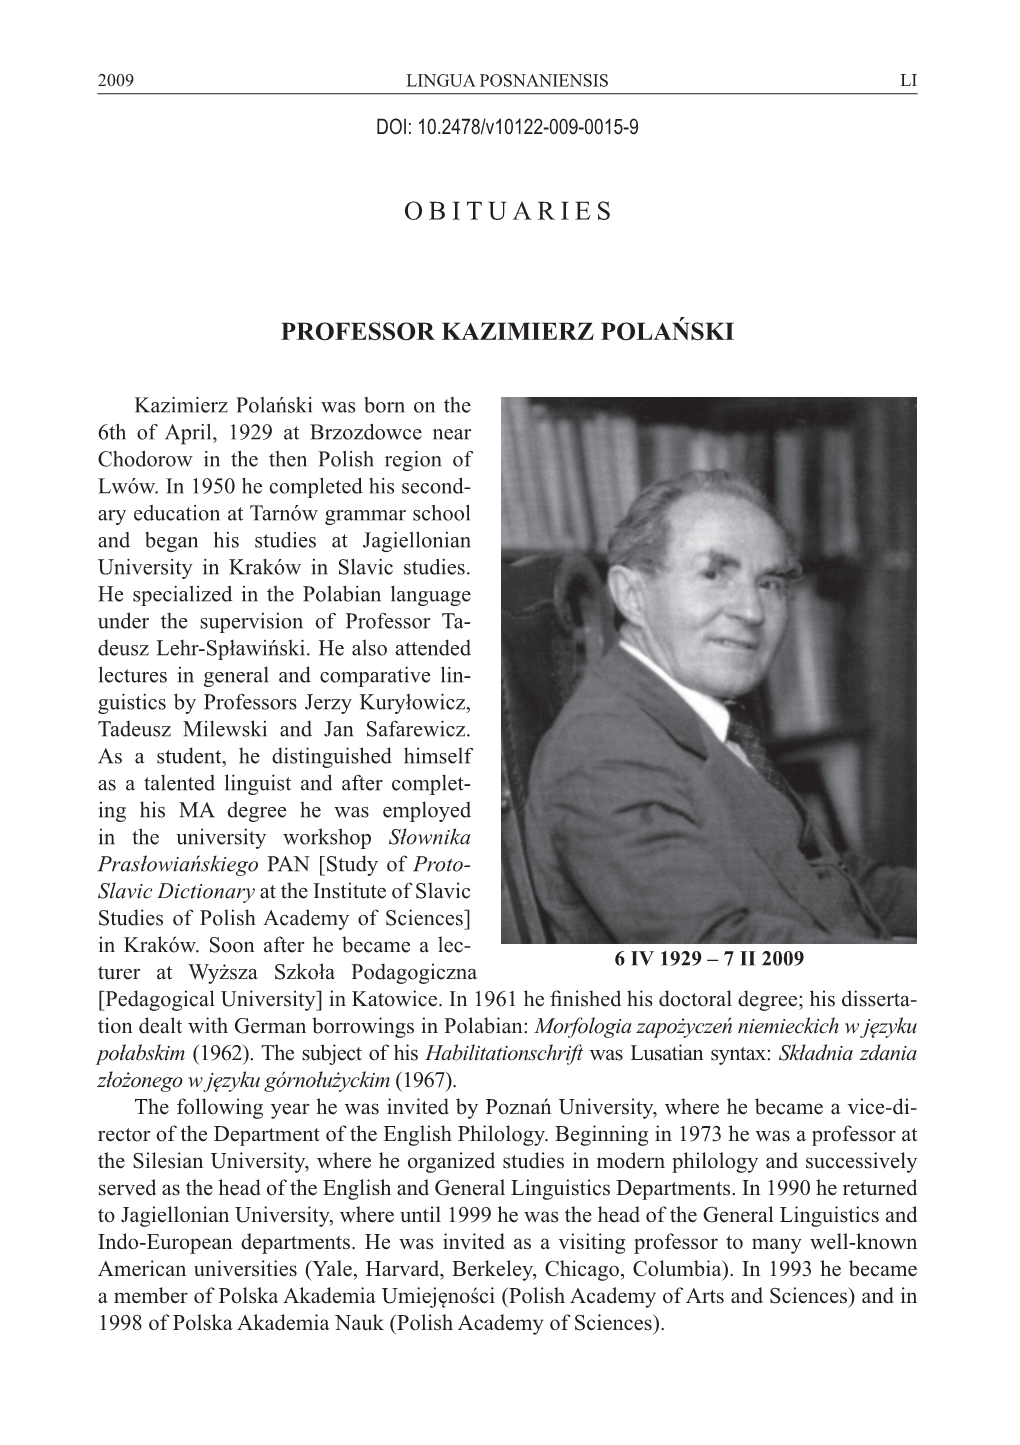 Obituaries Professor Kazimierz Polański